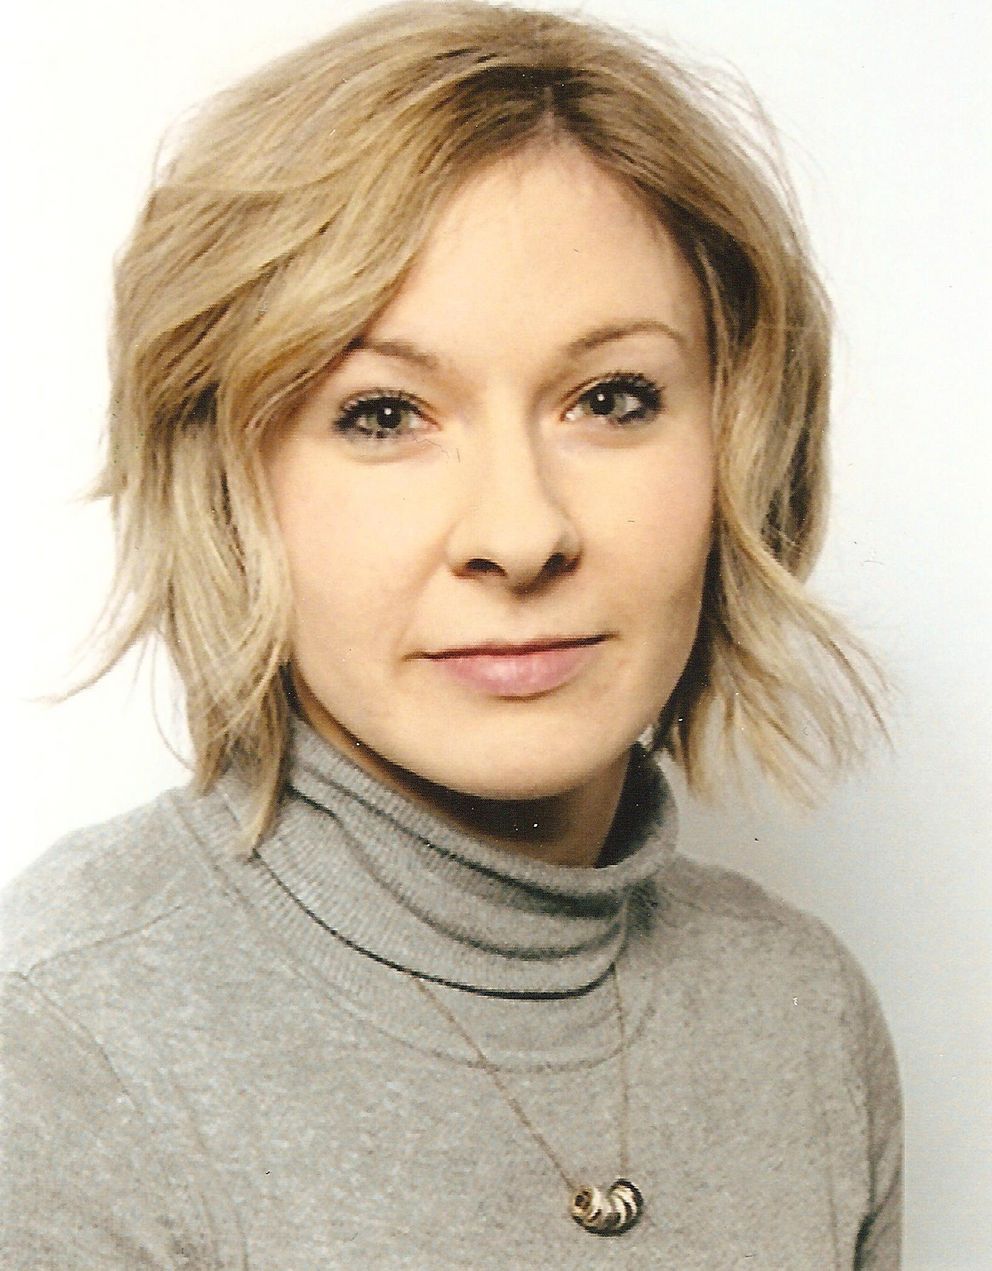 Dr. Franziska Jaschke